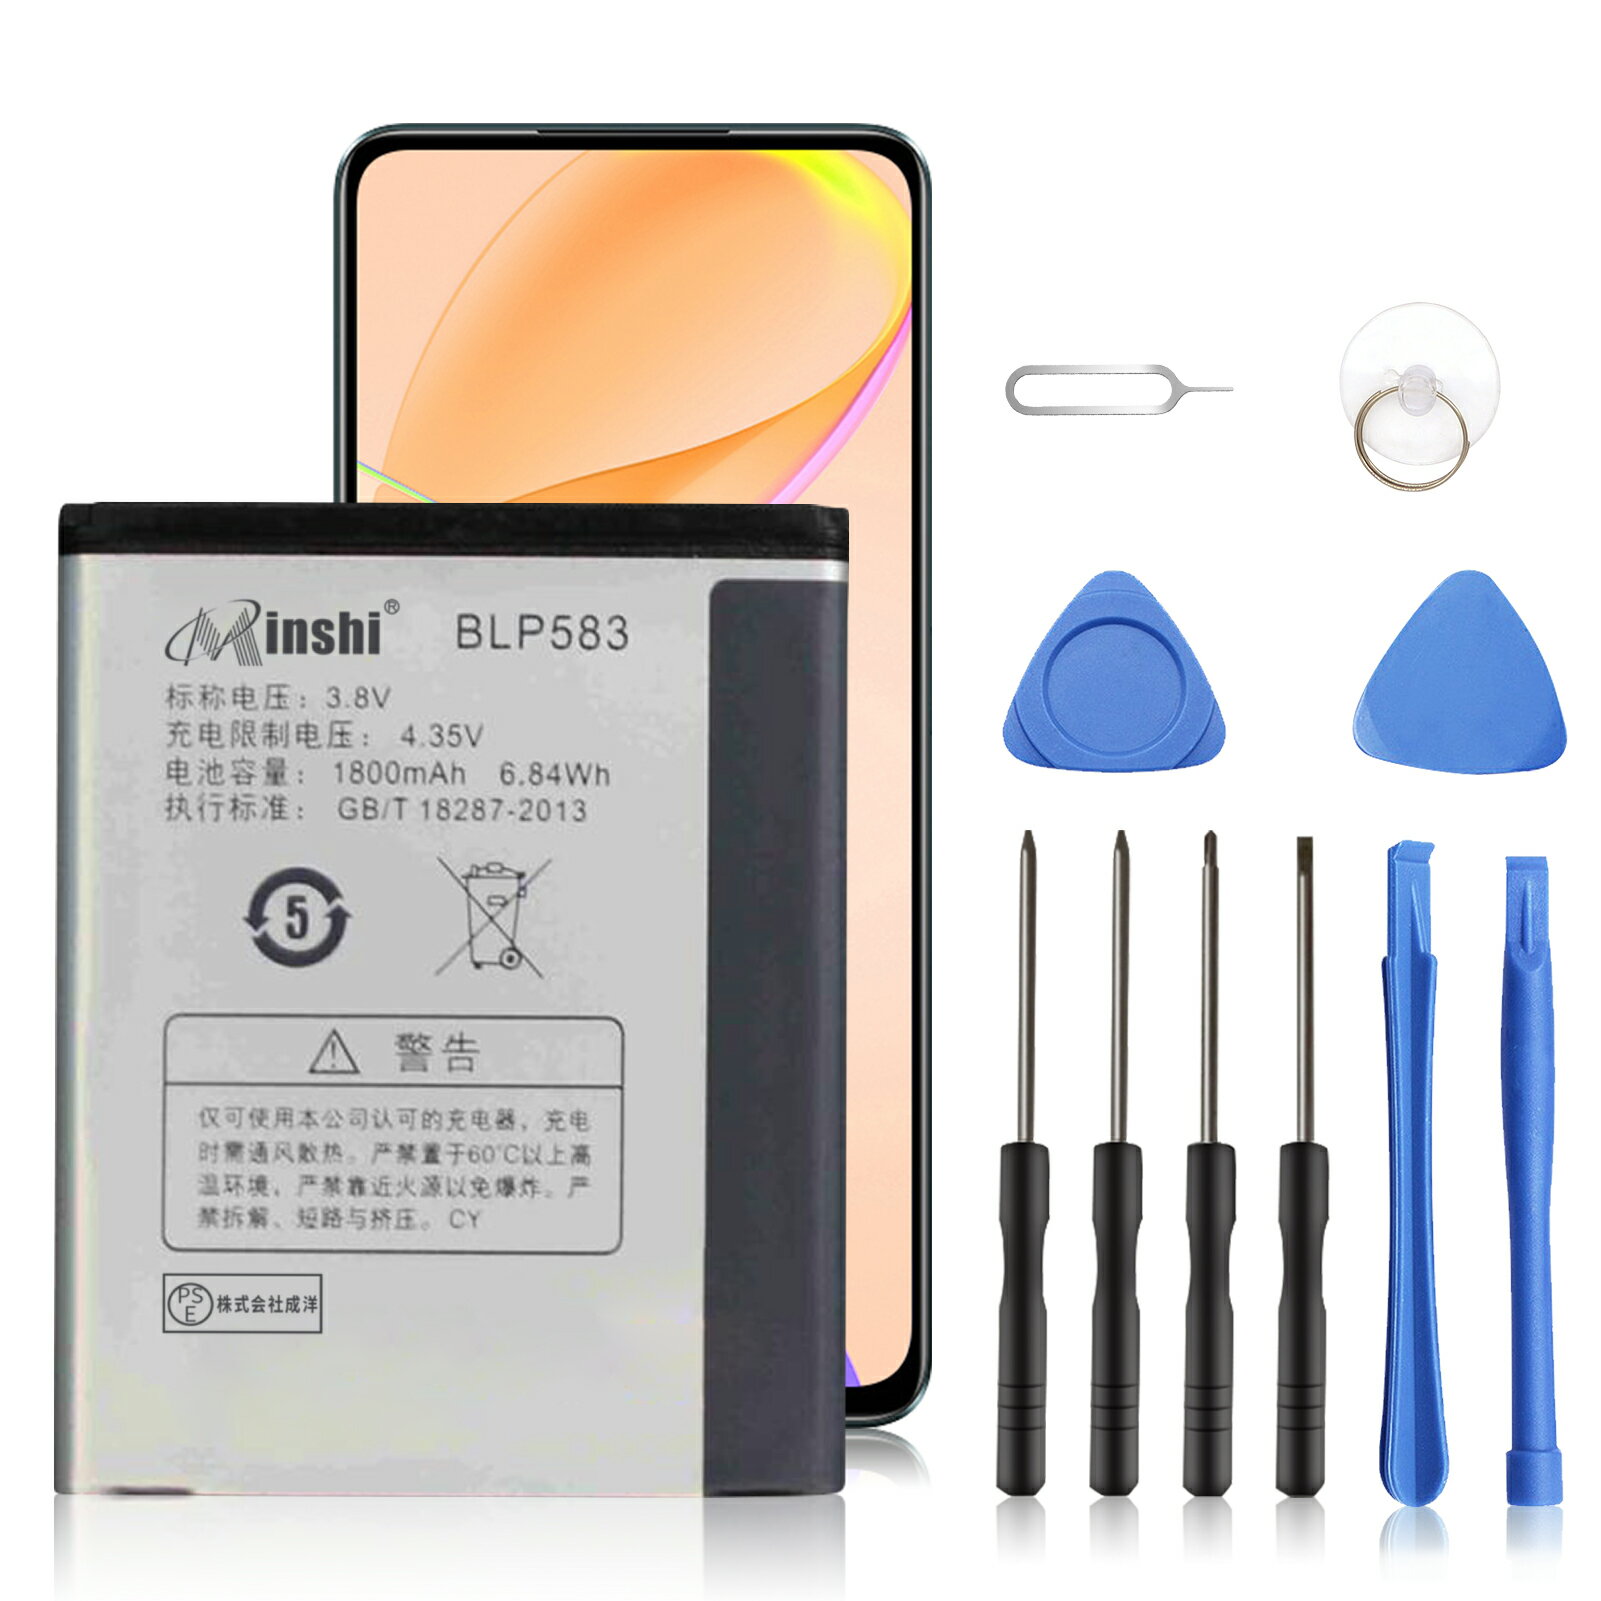 Minshi 新品 OPPO 1100 互換バッテリー 【1800mAh 3.8V】 対応用 1年保証 高性能 PSE認証 互換バッテリパック